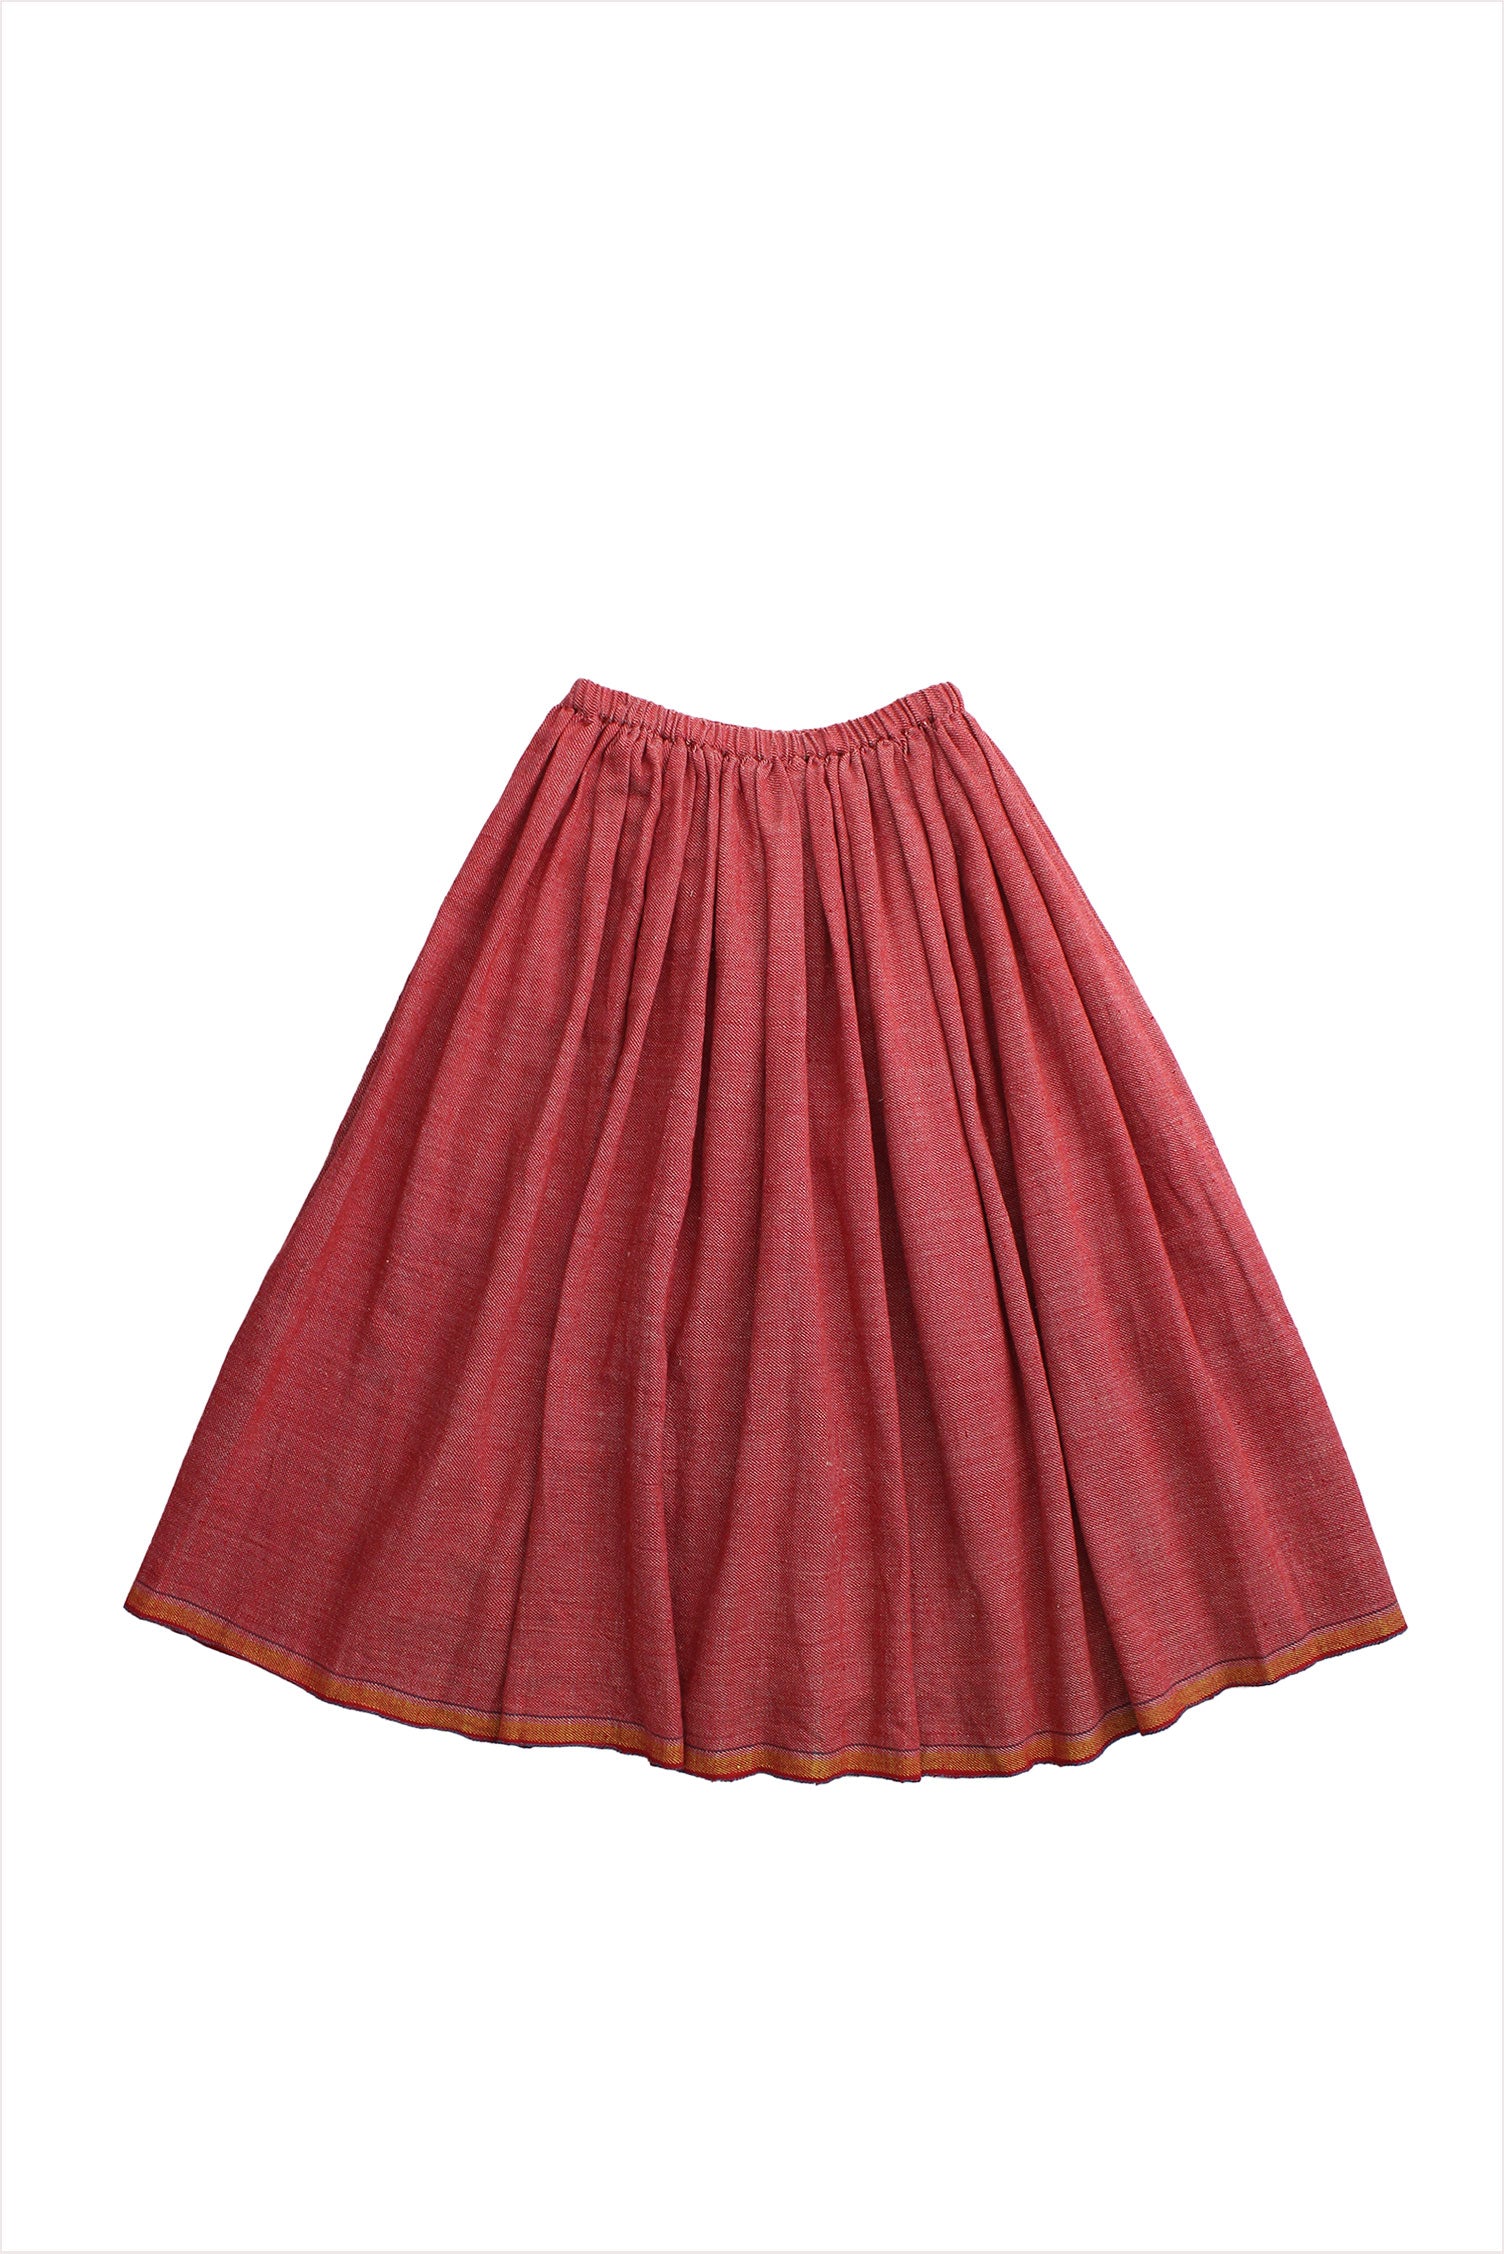 Injiri Rasa 118 Red Skirt